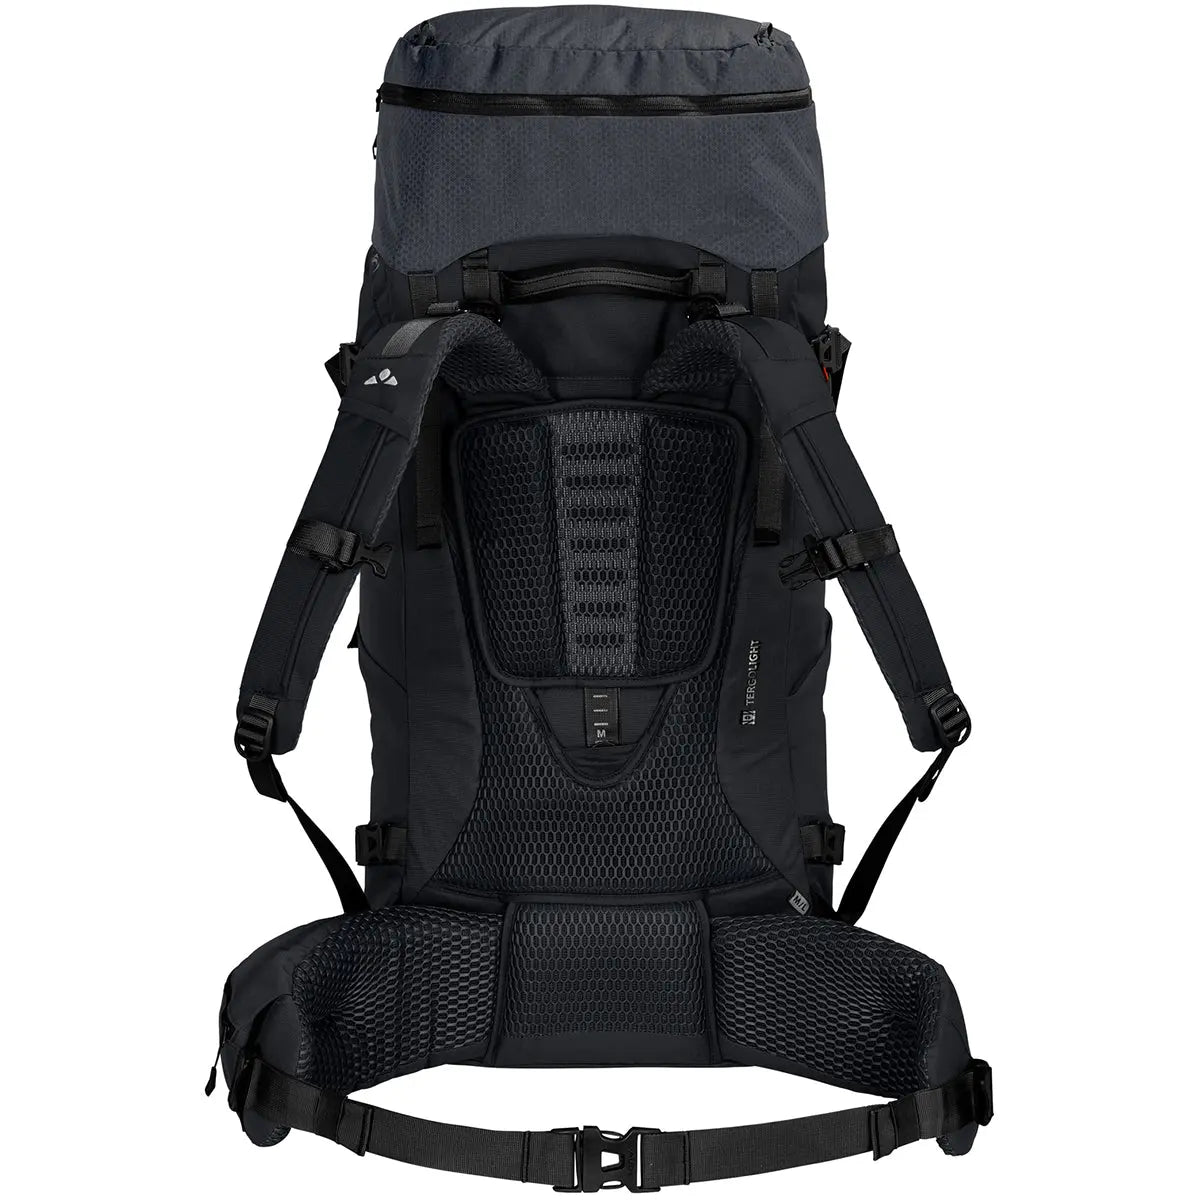 Vaude Astrum EVO 65+10 L Trekking Backpack - XL - Black Vaude